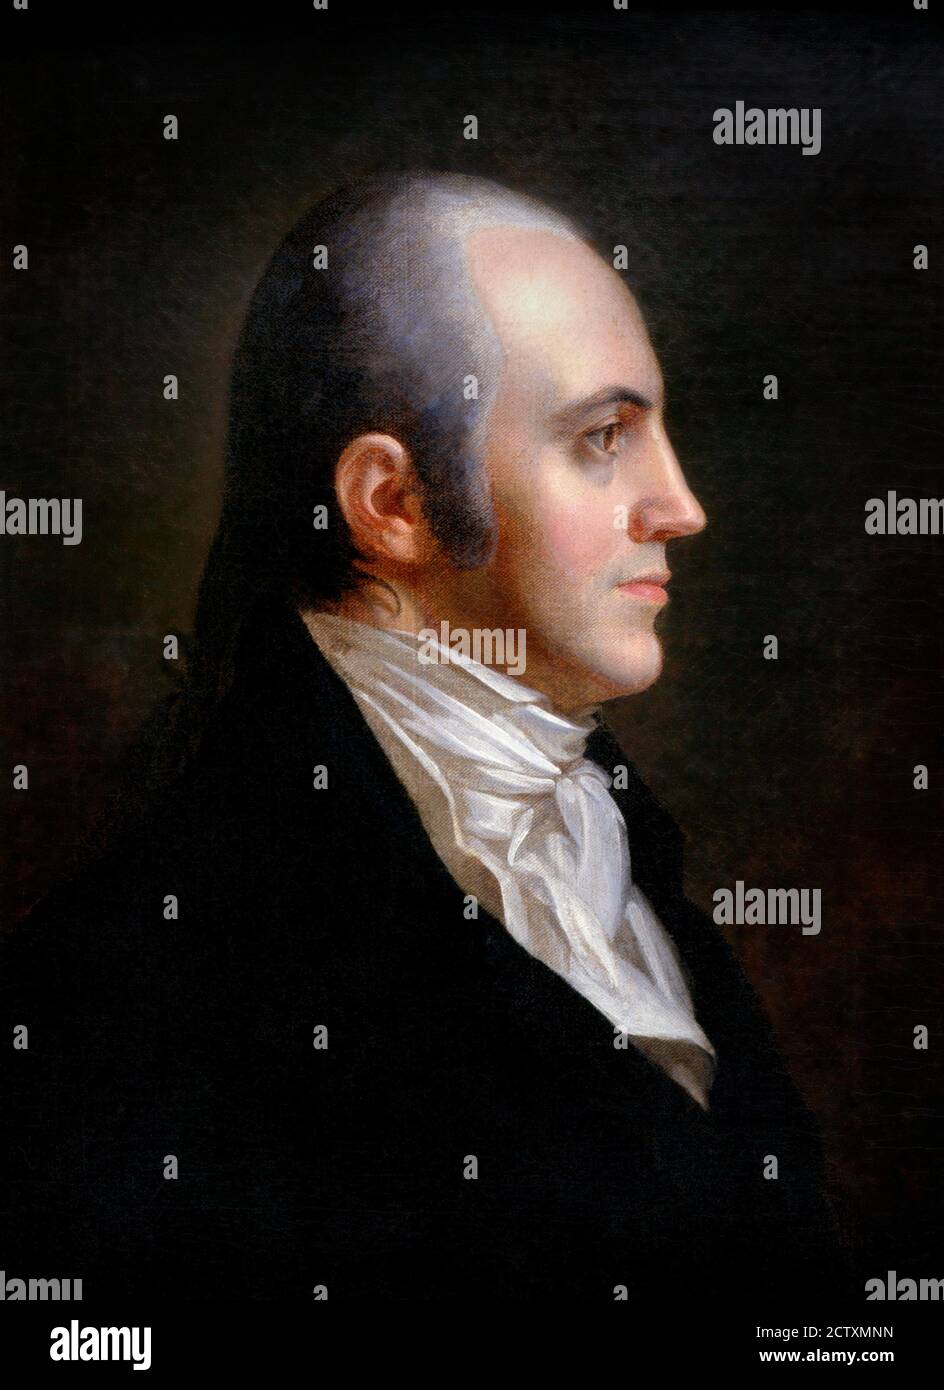 Aaron Burr Portrait de l'un des Pères fondateurs américains, Aaron Burr Jr. (1756-1836) par John Vanderlyn, huile sur toile, 1802. Burr a été le troisième vice-président des États-Unis mais est plus célèbre pour avoir tué Alexander Hamilton dans un duel en 1804. Banque D'Images